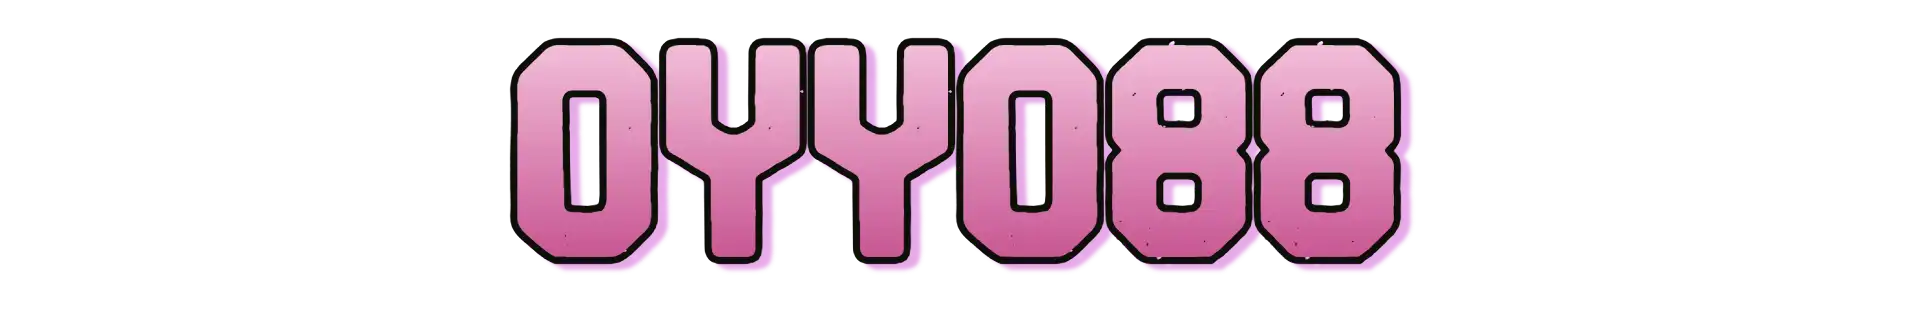 Oyyo88